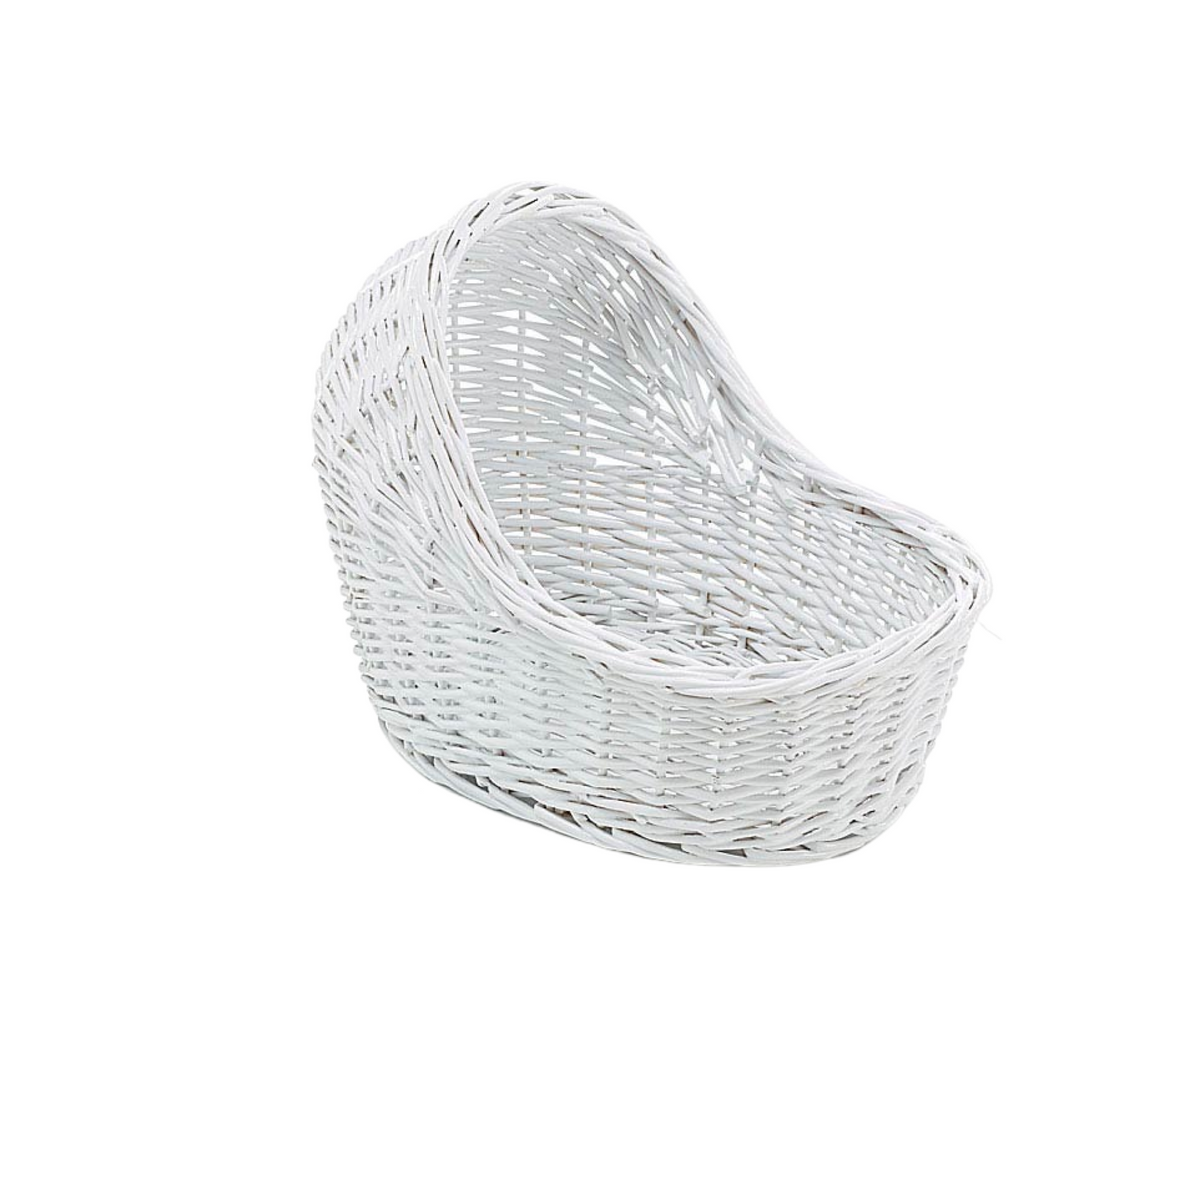 White Wicker Bassinet Gift Basket